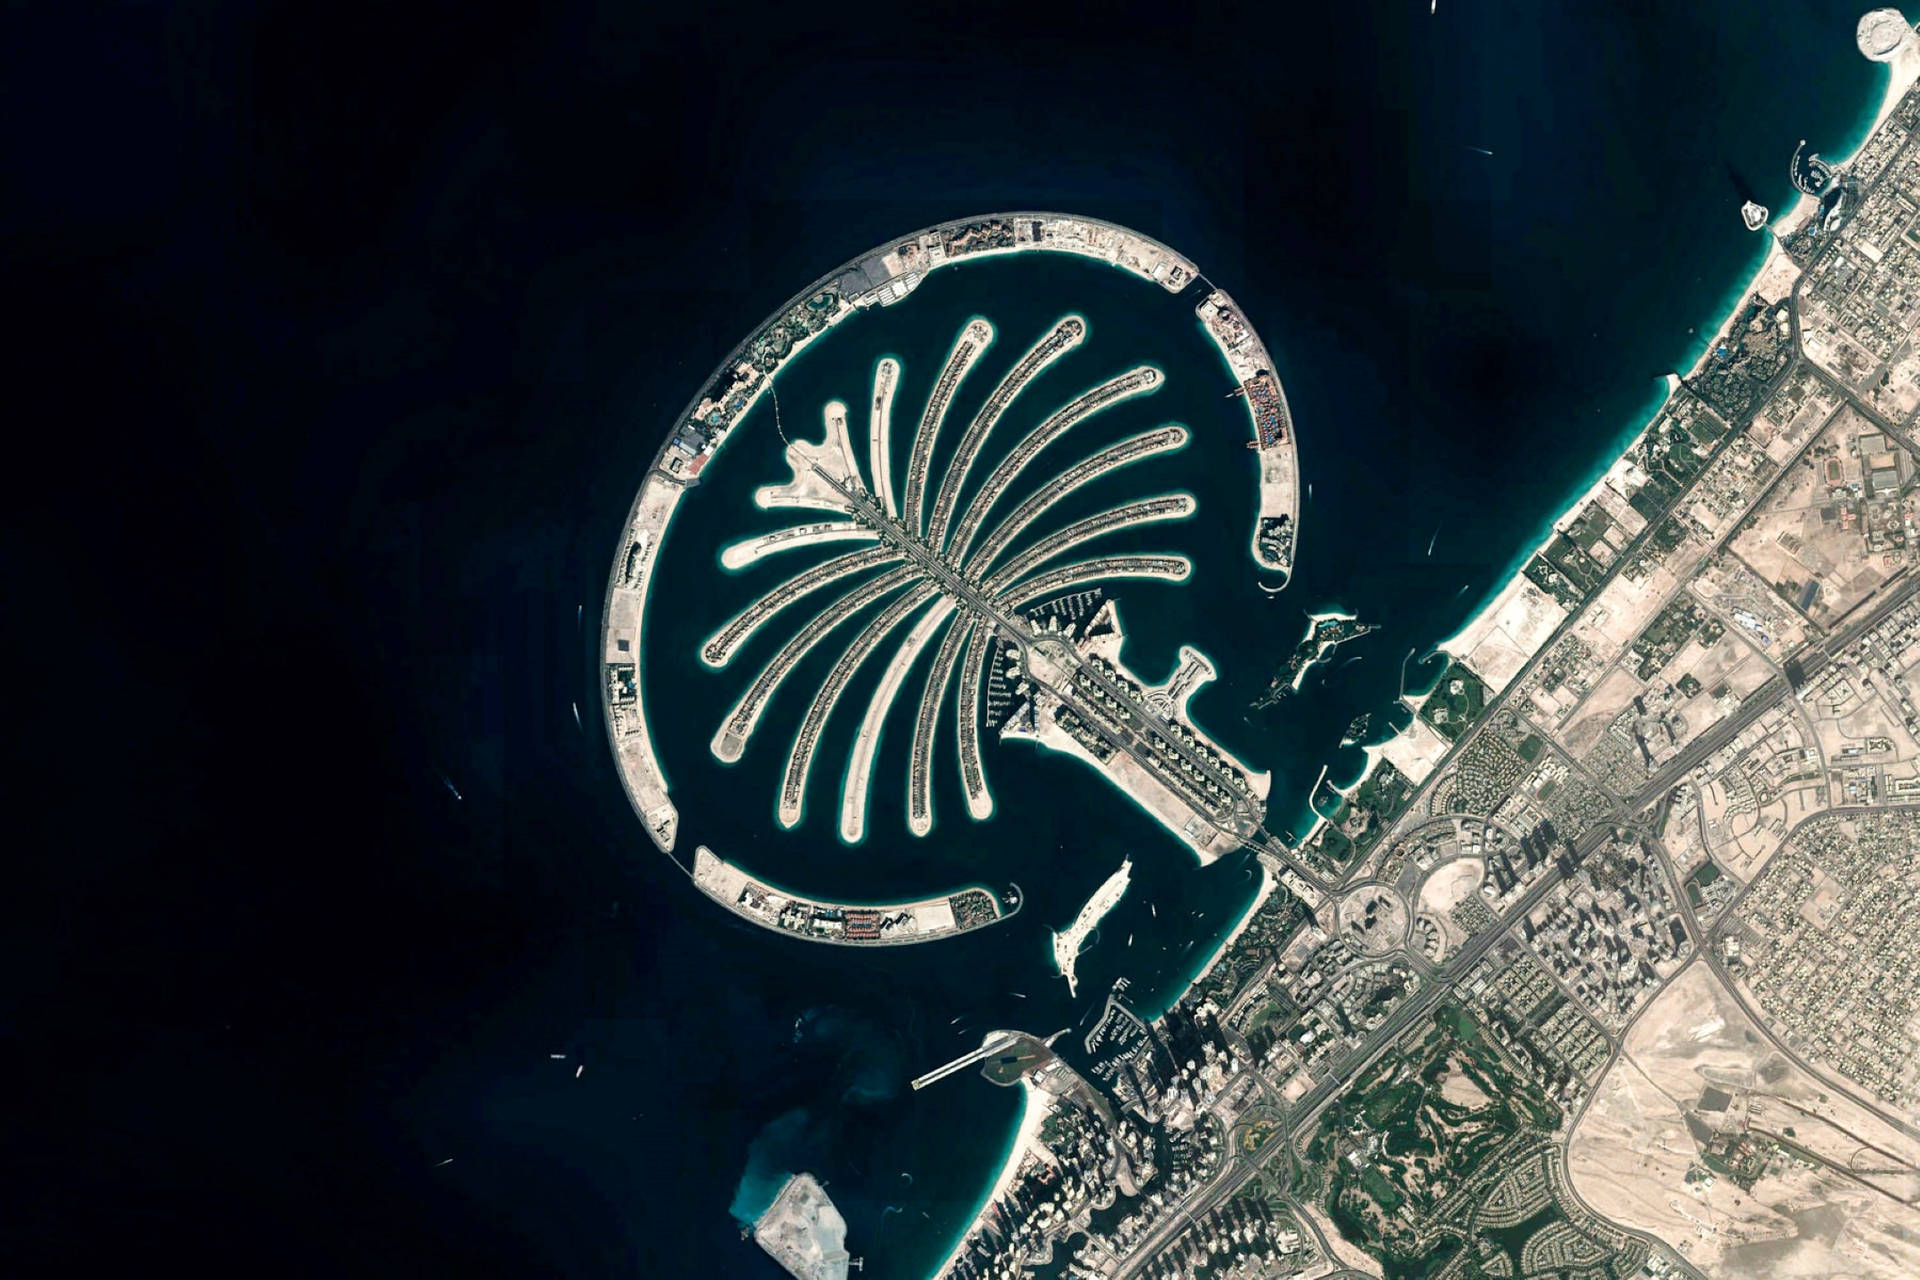 Googleearth Es Una Aplicación Que Te Permite Explorar El Mundo Desde Tu Computadora O Dispositivo Móvil. Con Google Earth, Podrás Disfrutar De Impresionantes Imágenes Del Famoso Palm Dubai Como Fondo De Pantalla. Fondo de pantalla